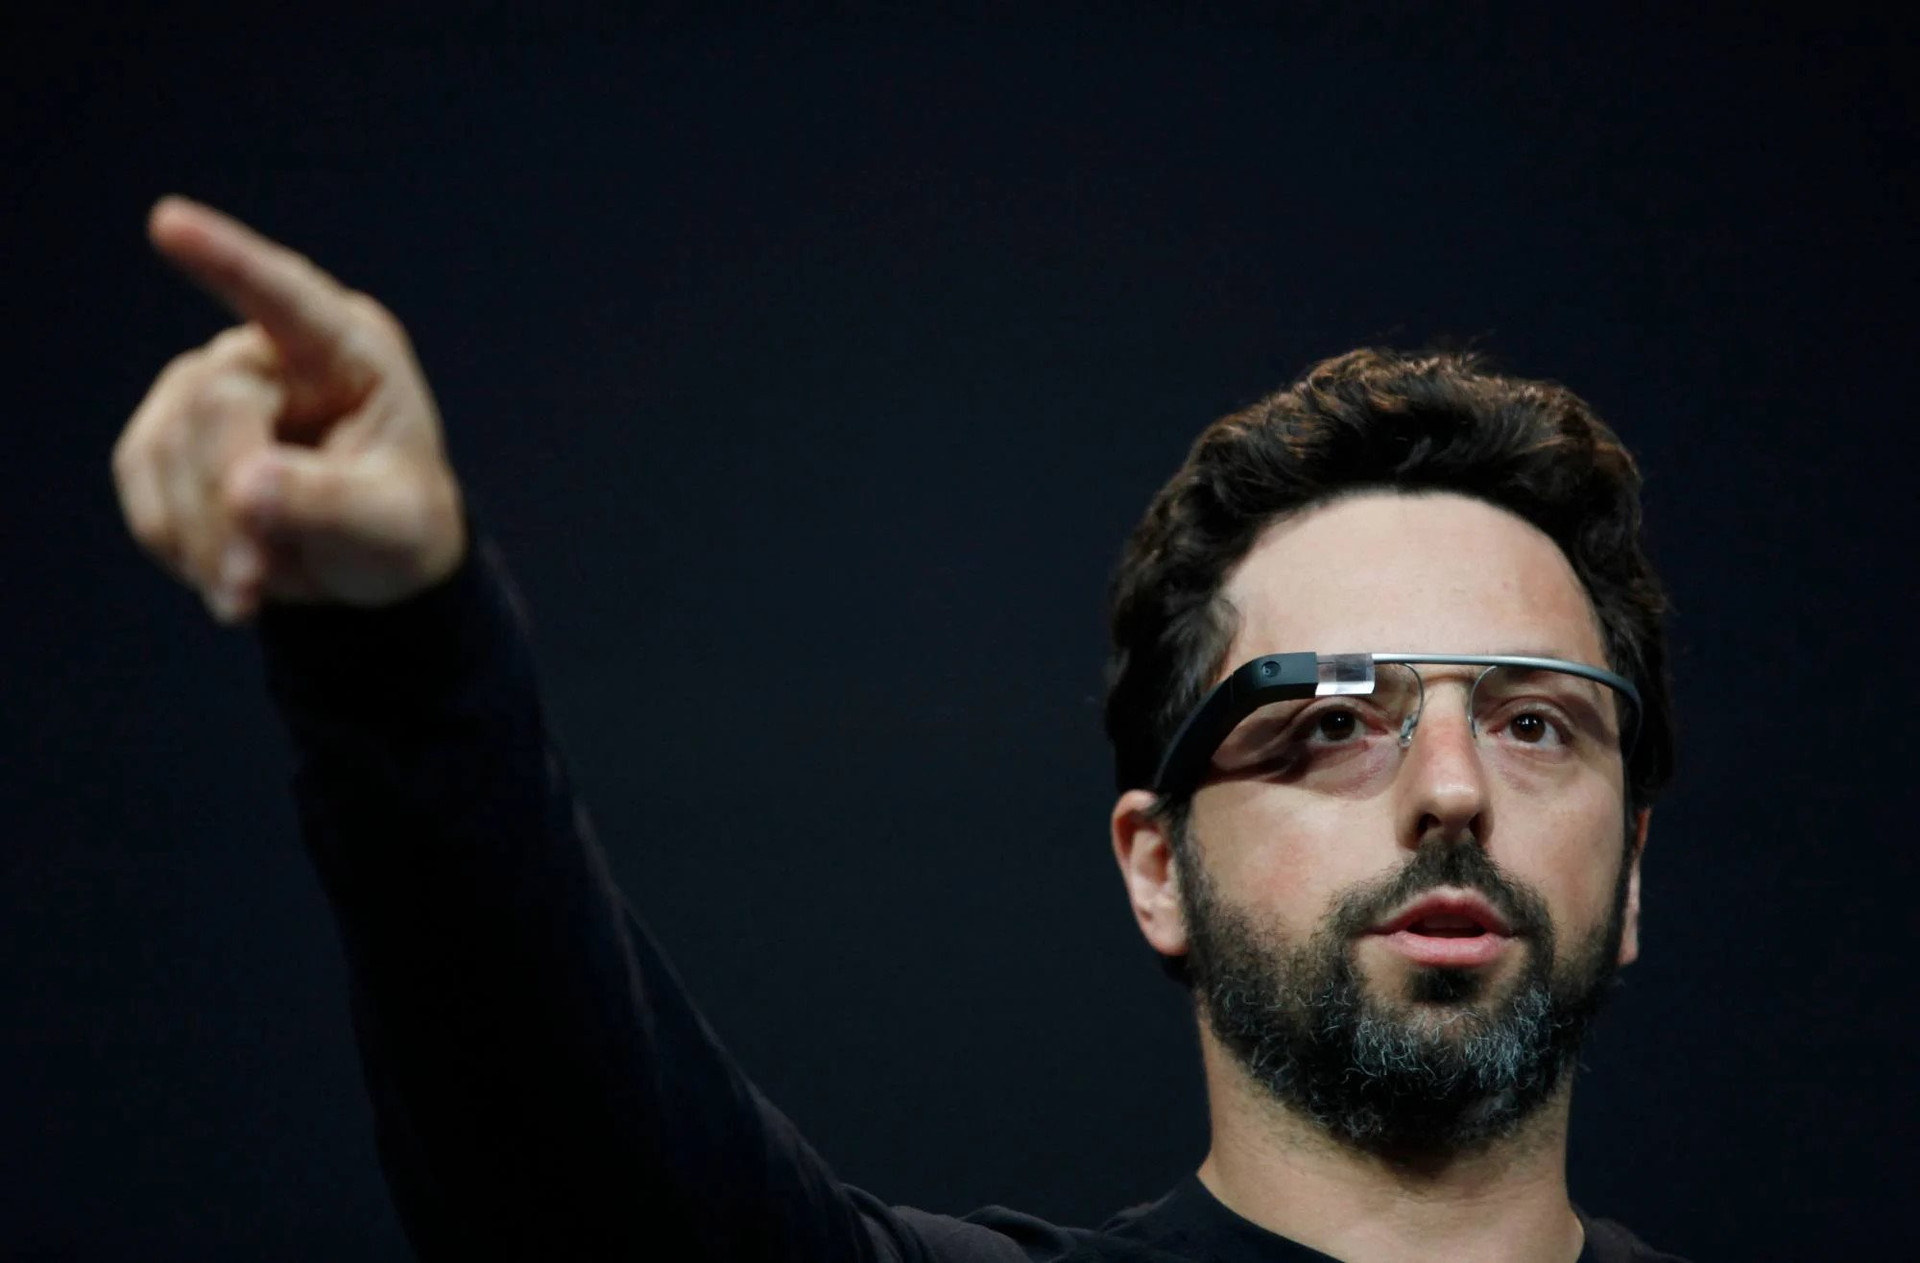 Rời Google, tỷ phú công nghệ Sergey Brin say sưa với một thú vui xa hoa, thuê 50 người chỉ để làm một việc ít ai ngờ - Ảnh 2.